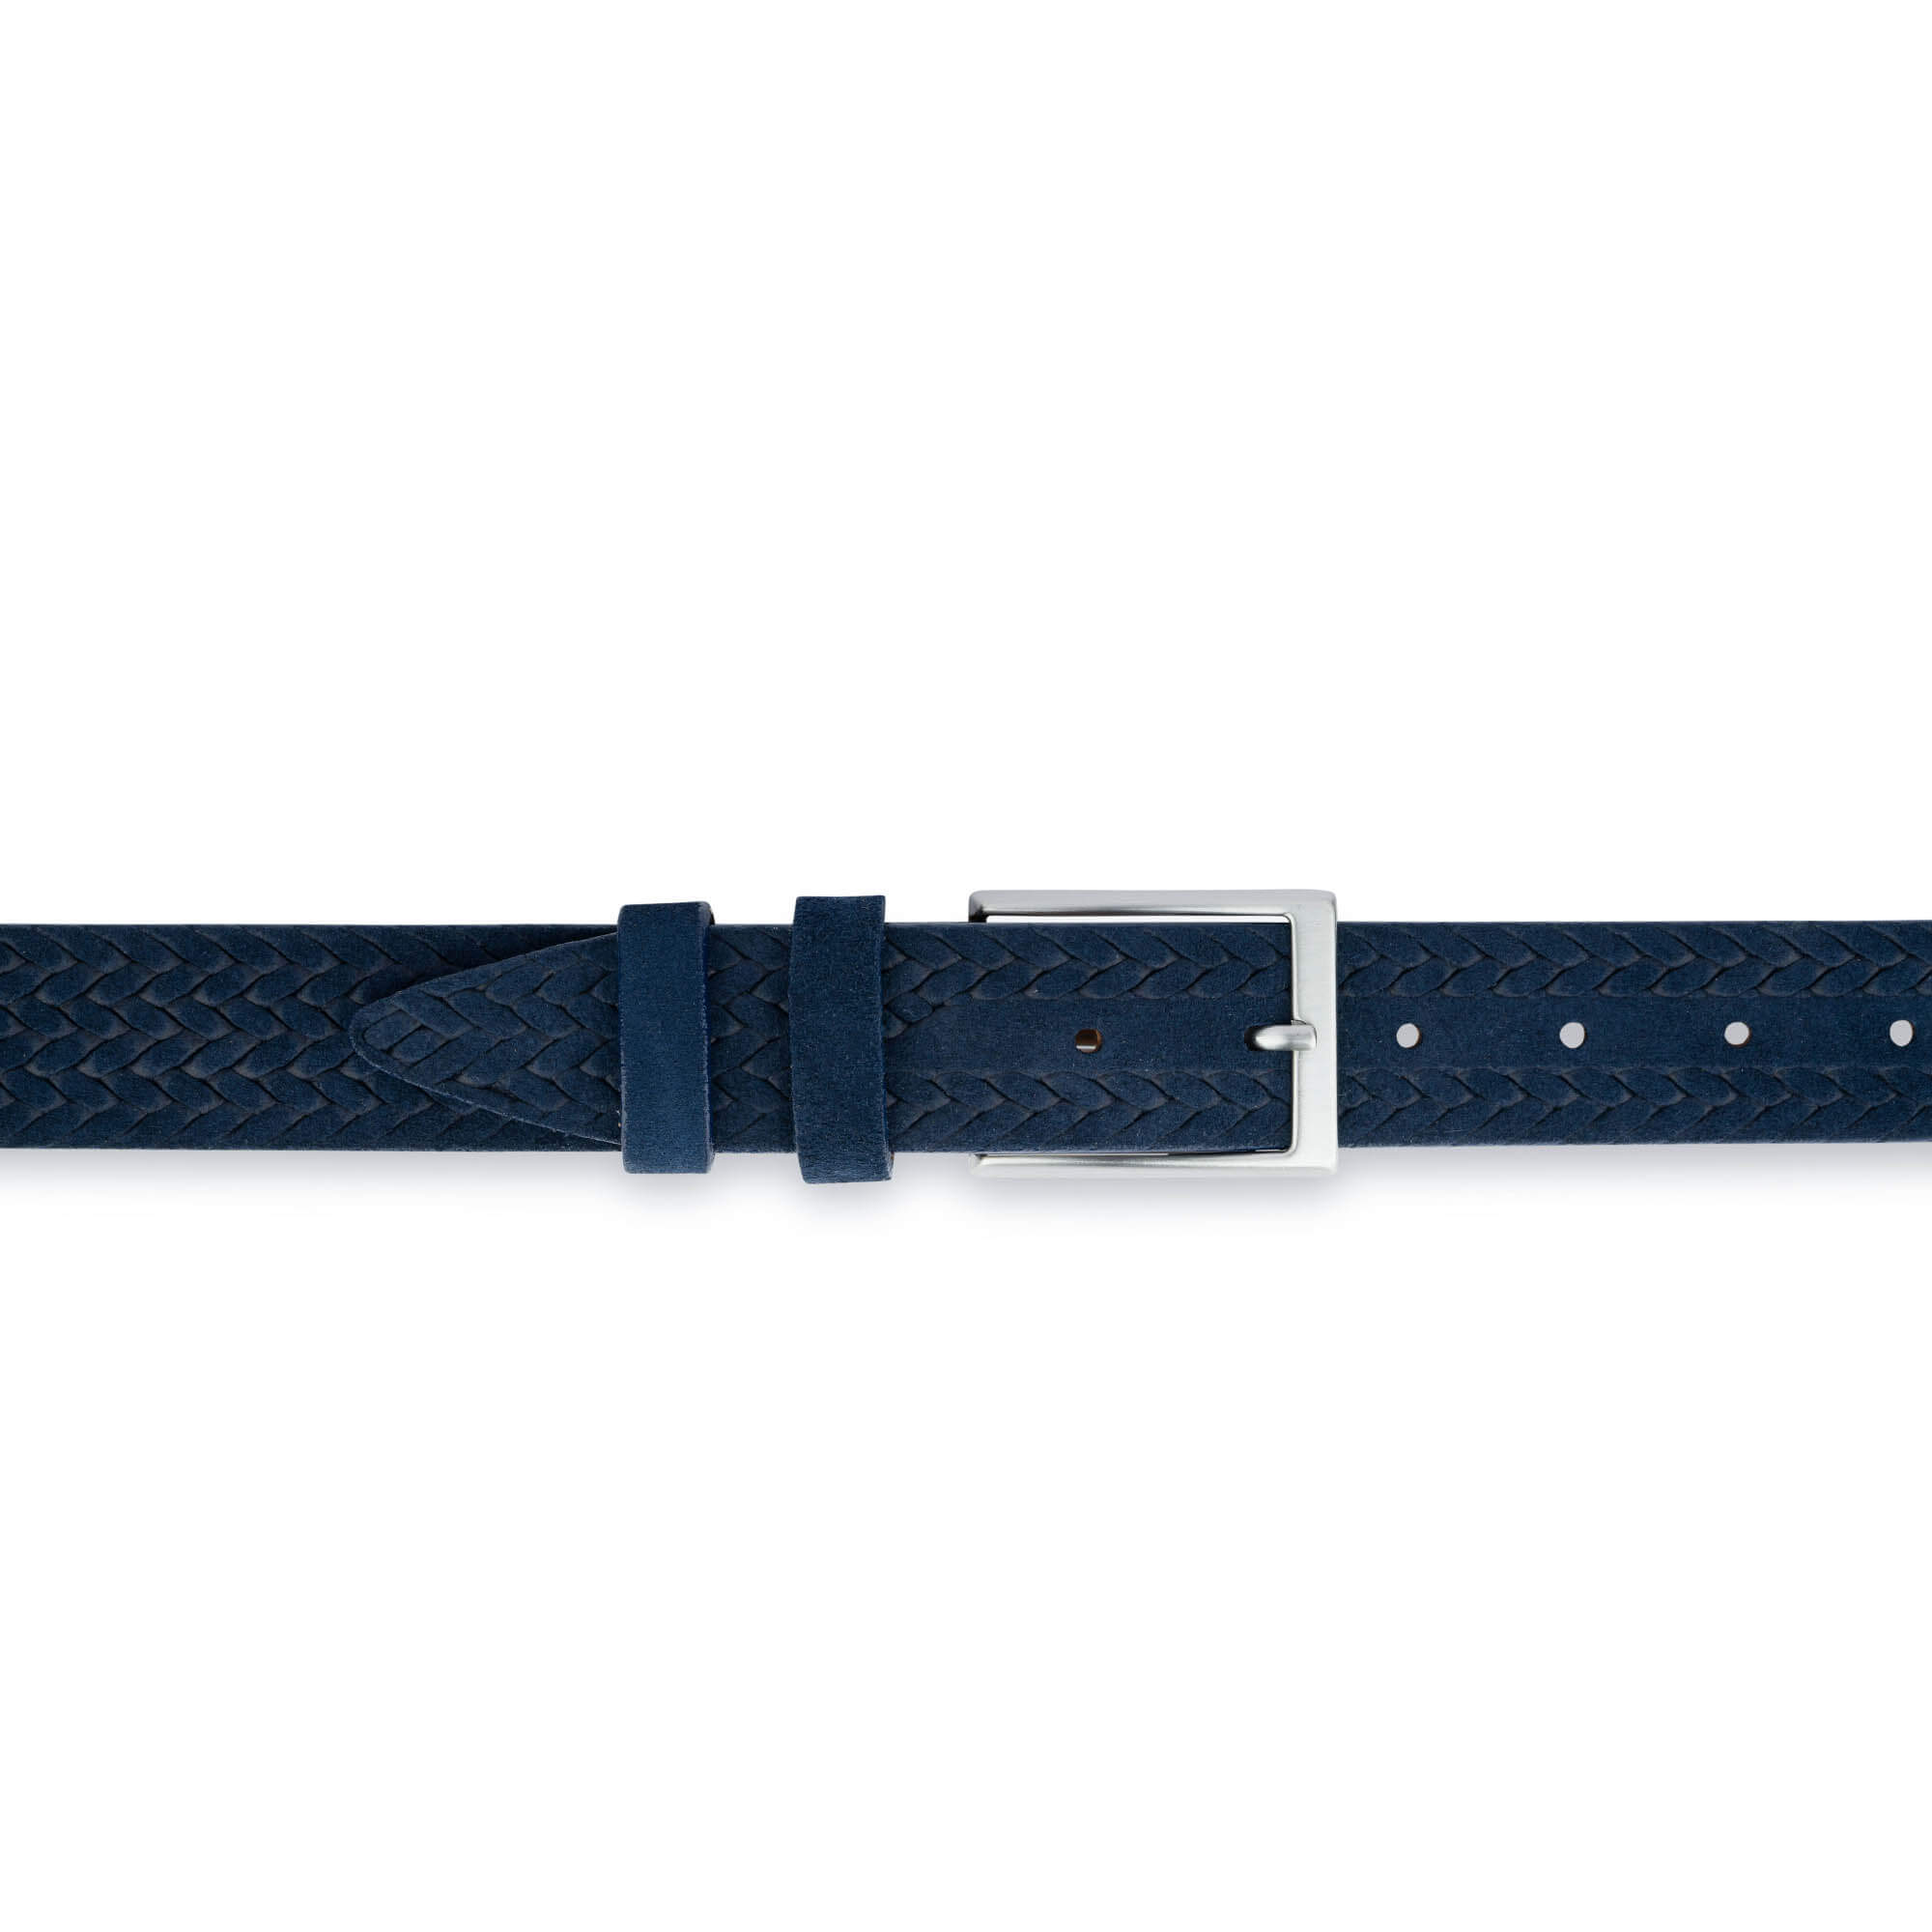 Buy Blue Suede Leather Belt - Woven Emboss - LeatherBeltsOnline.com